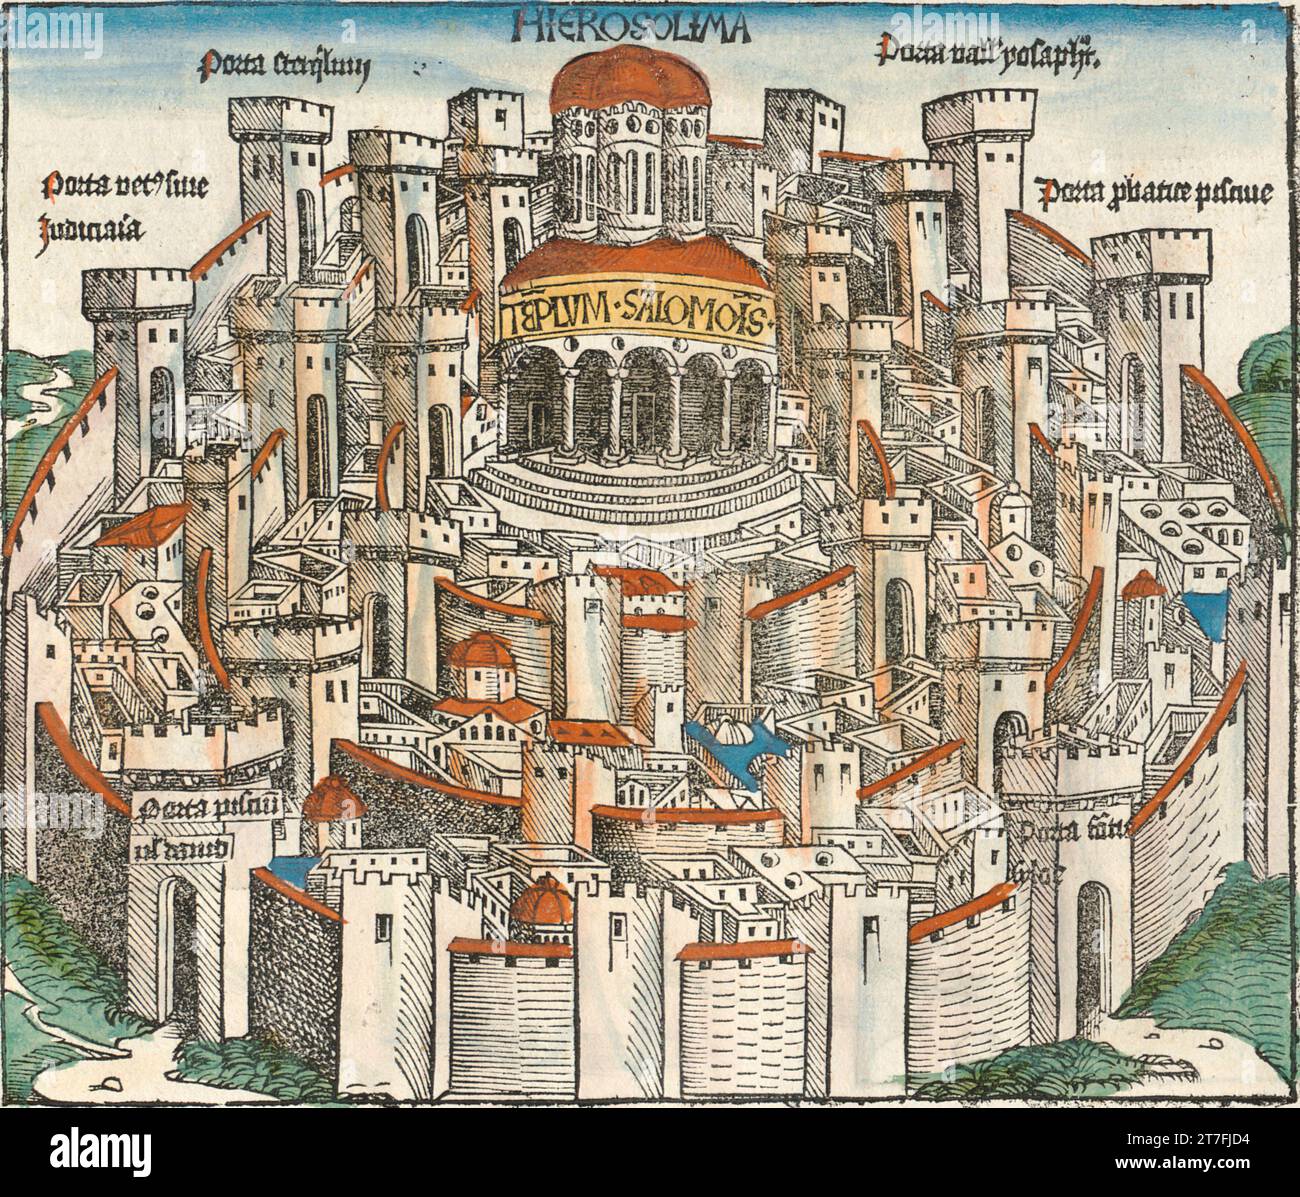 Représentation de Jérusalem, Sultanat de Mamaluk - Illustration de la chronique de Nuremberg, 1493. Illustré par Wilhelm Pleydenwurff et Michael Wolgemut Banque D'Images